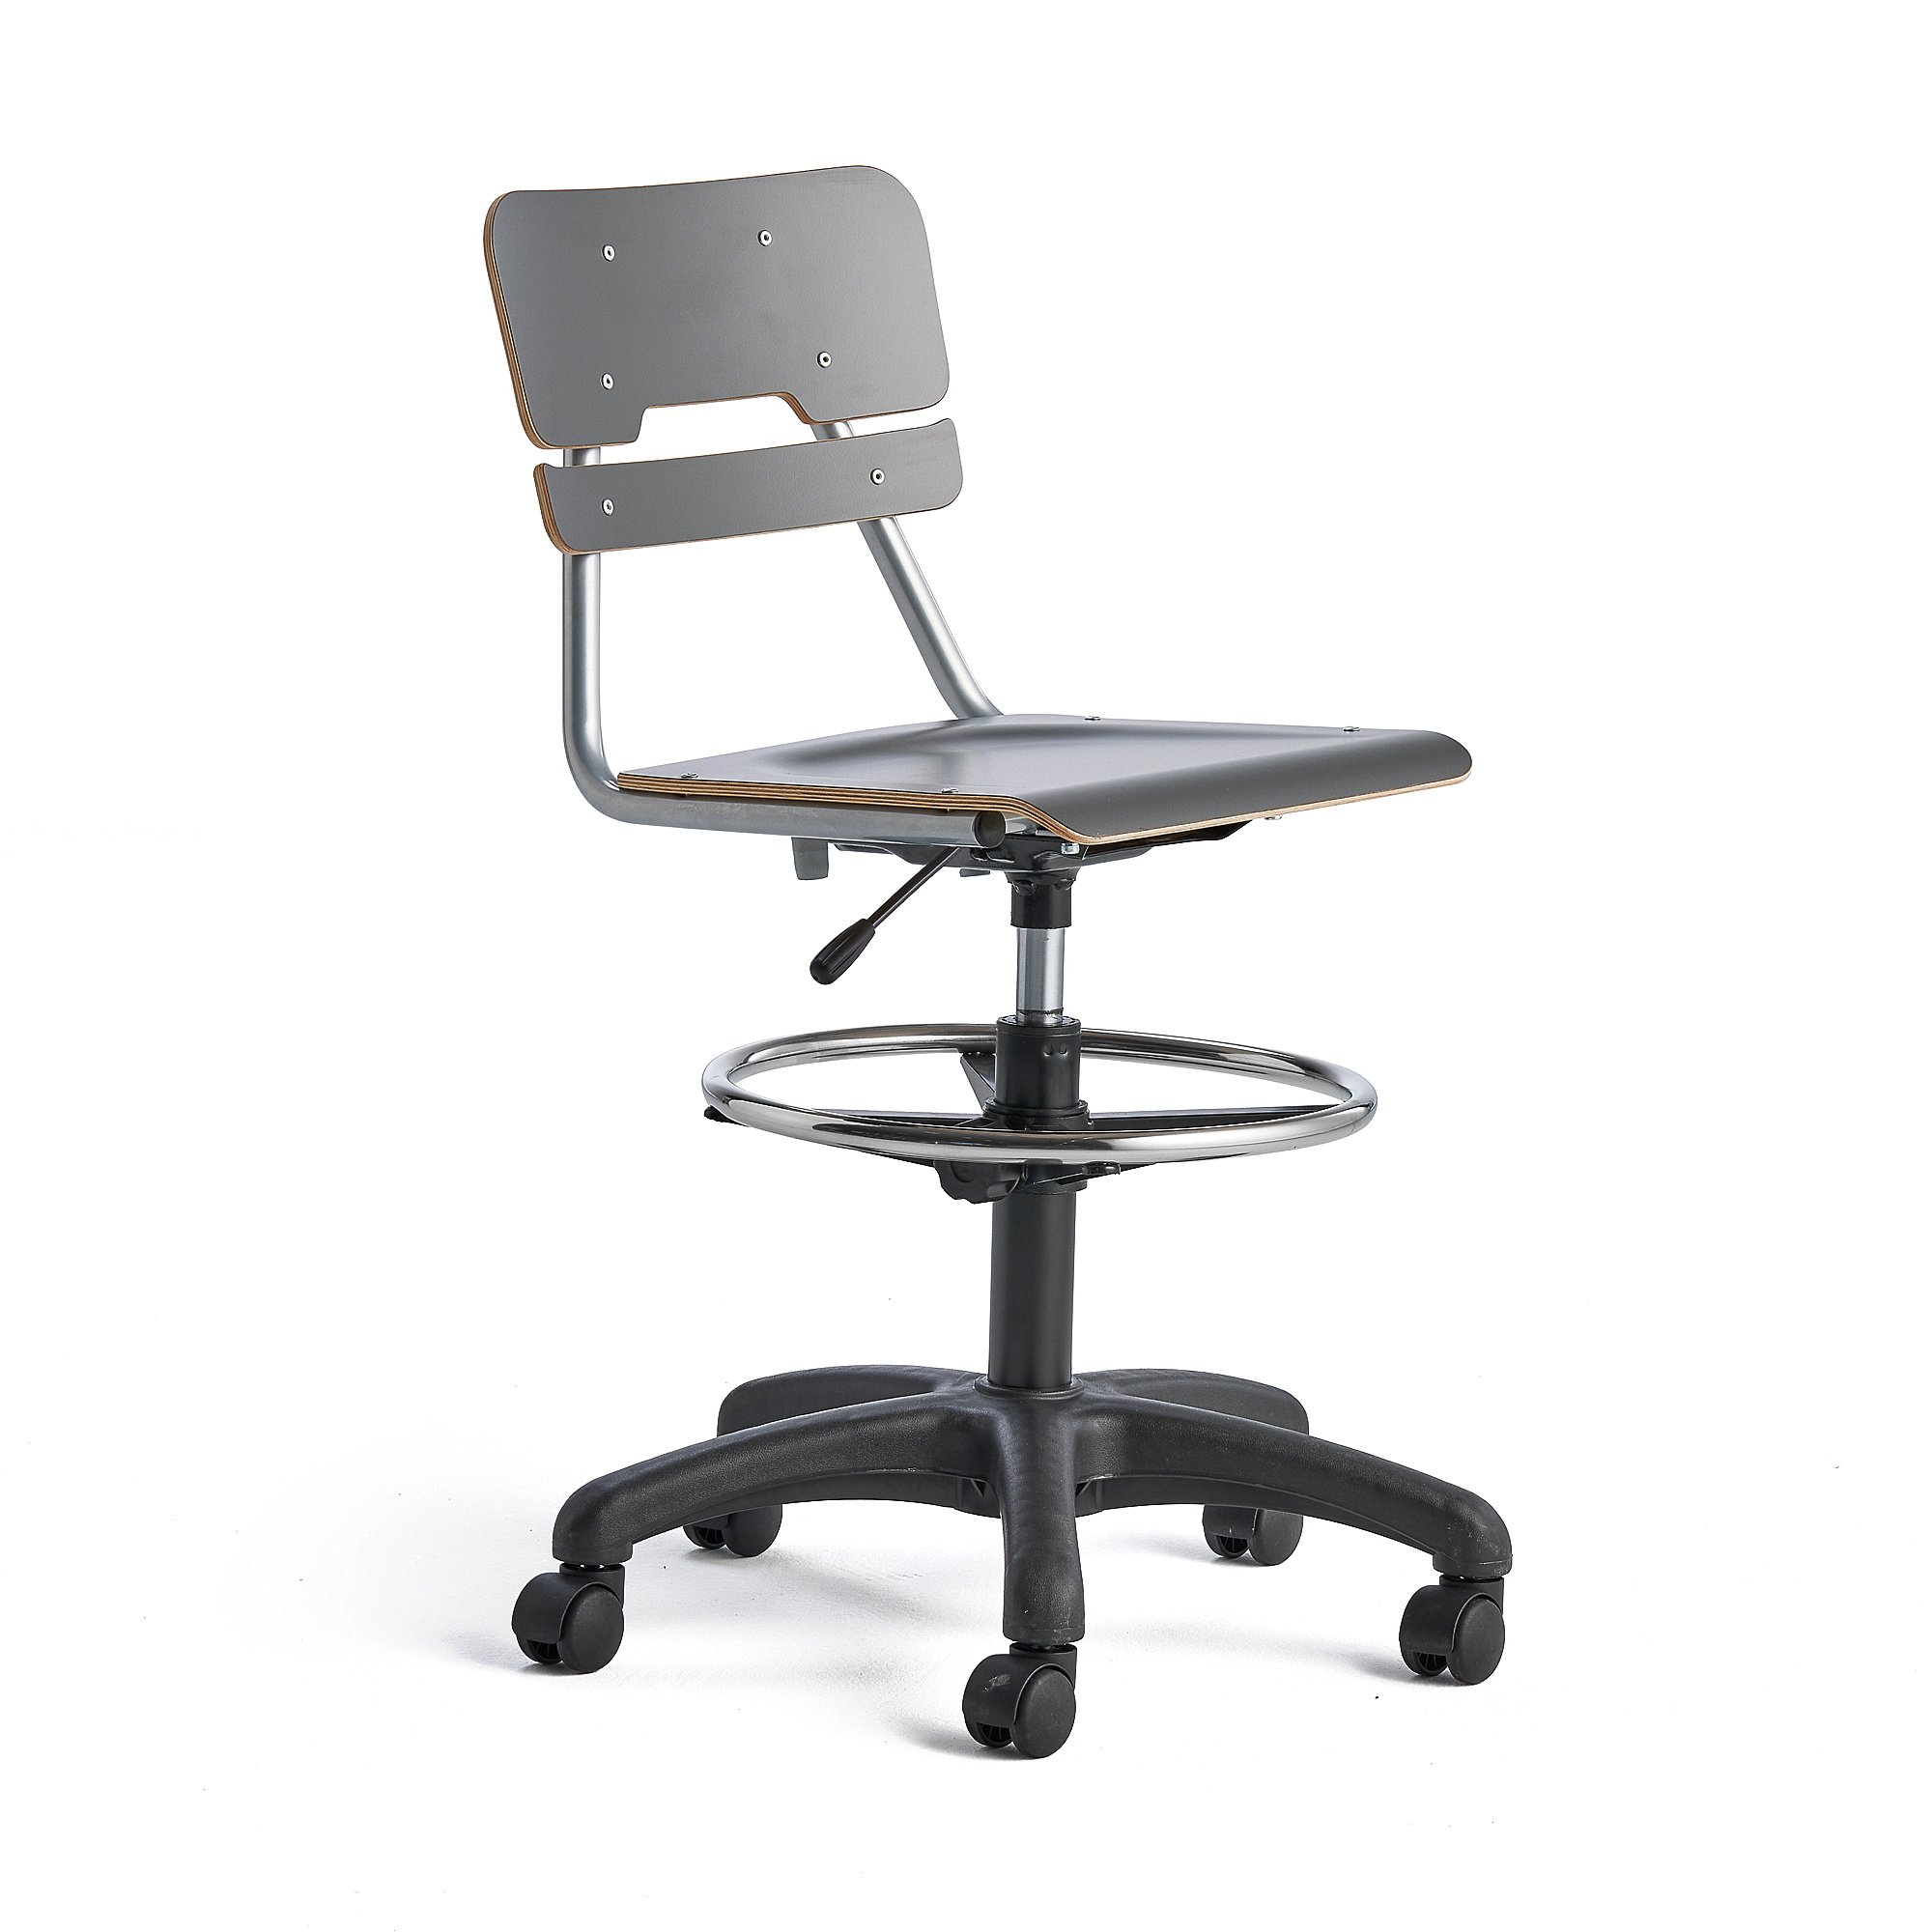 Otočná židle LEGERE, velký sedák, s kolečky, nastavitelná výška 530-720 mm, antracitově šedá